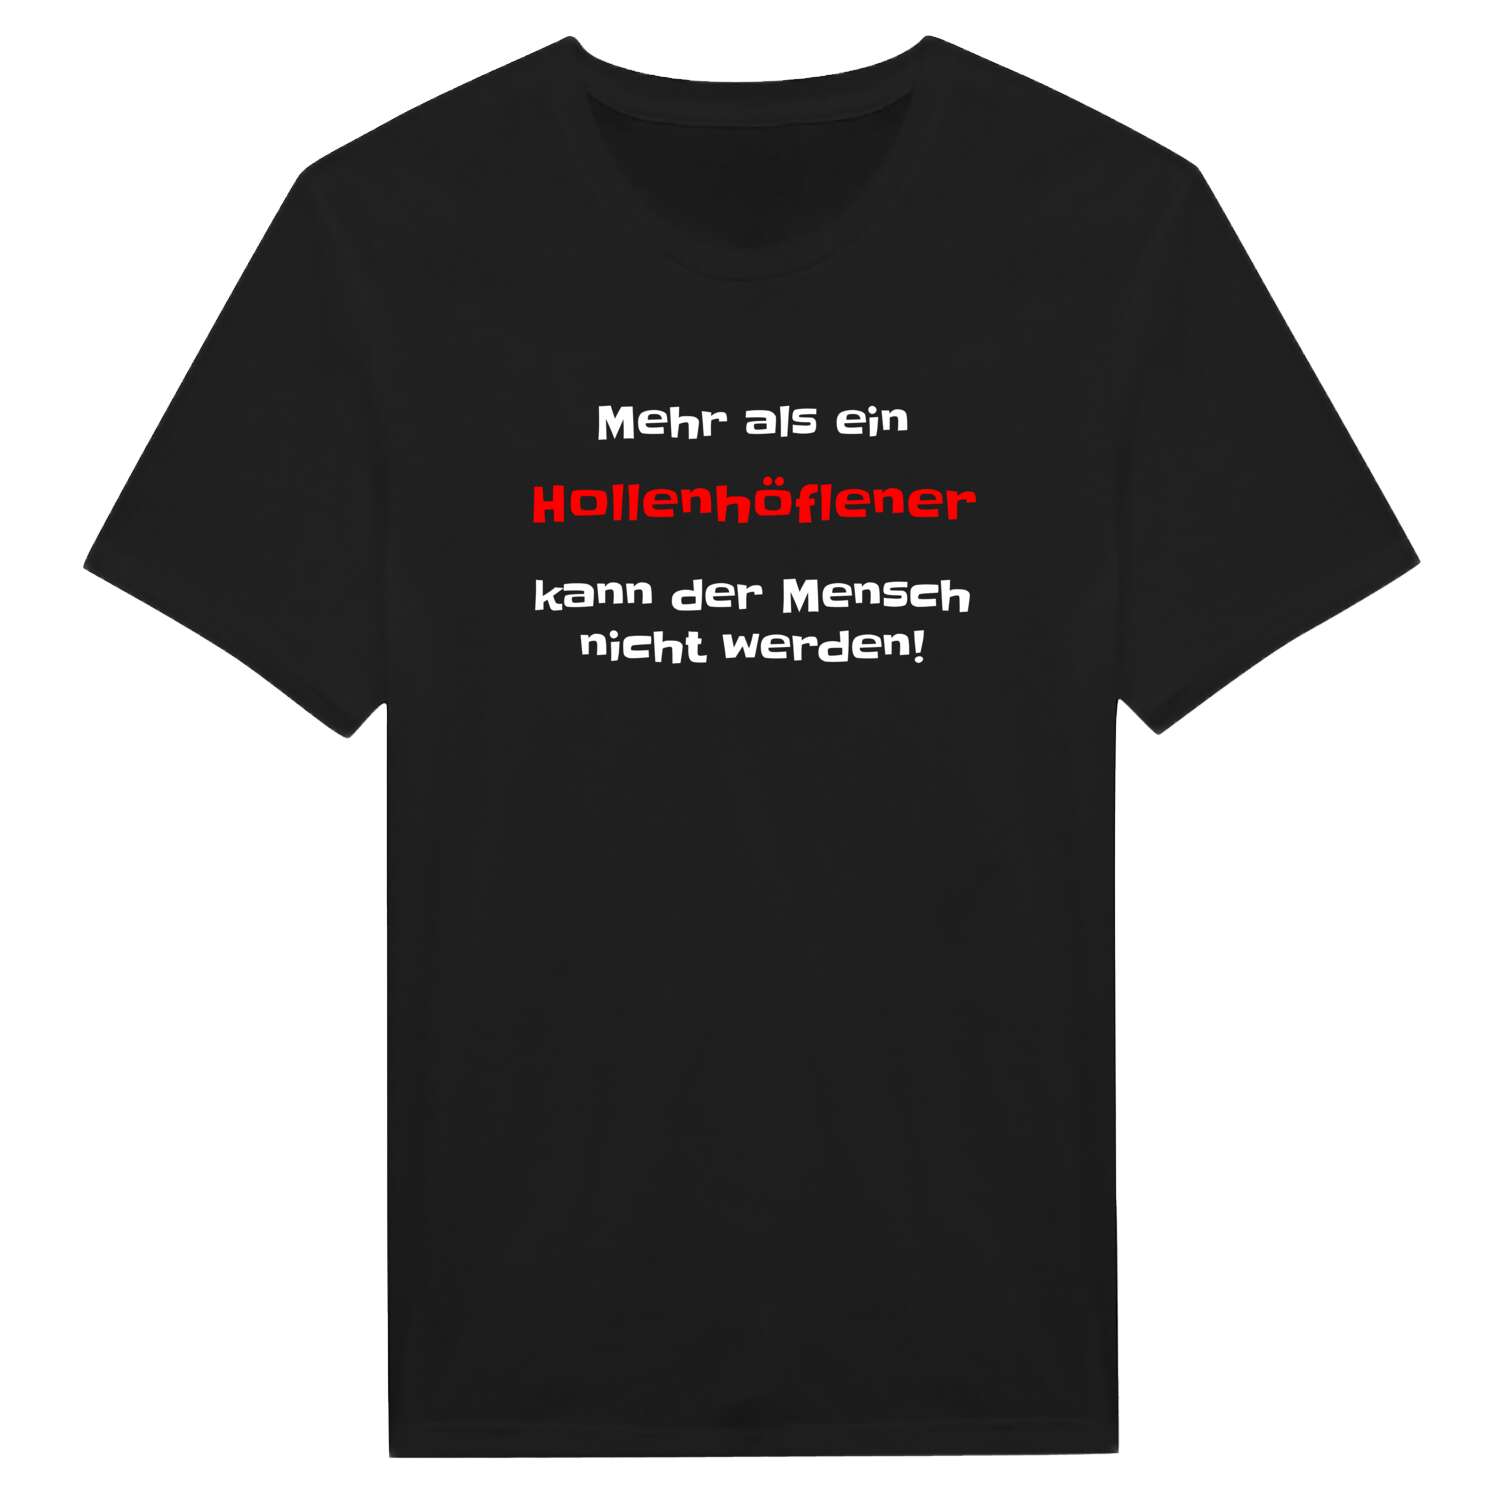 Hollenhöfle T-Shirt »Mehr als ein«